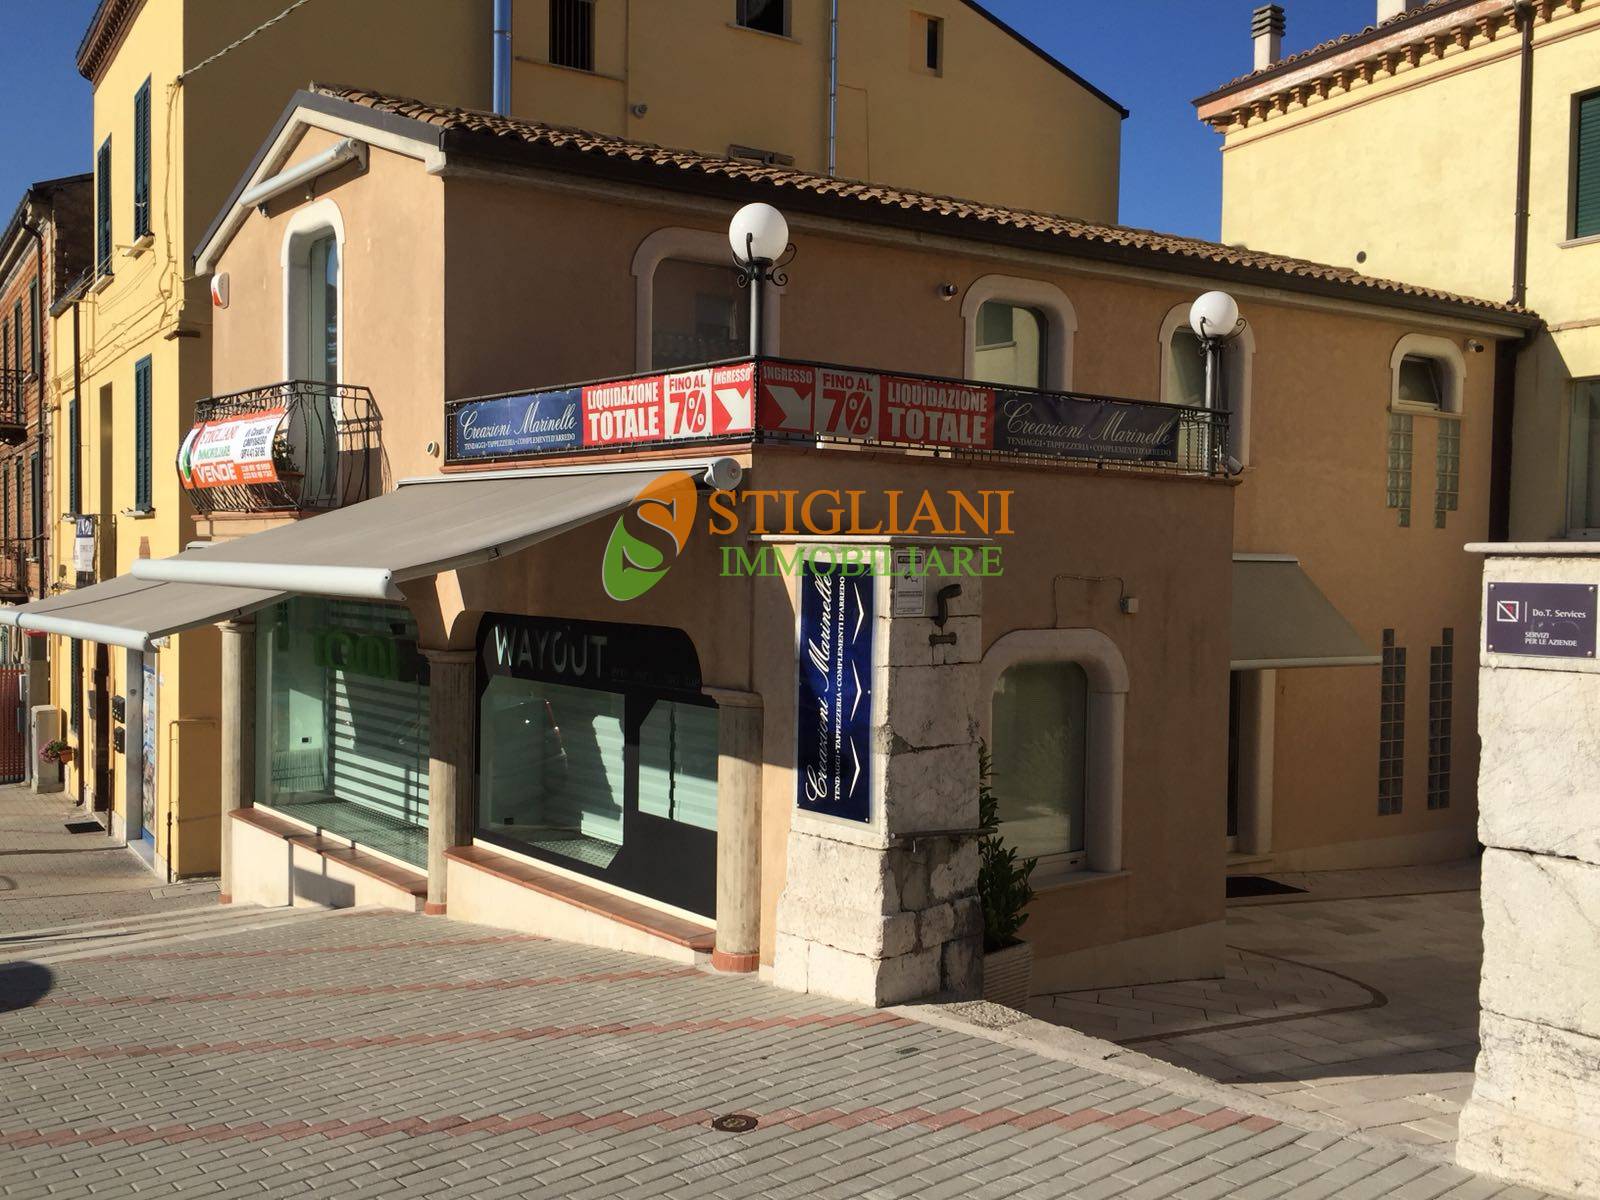 Locale commerciale in vendita, Campobasso semicentro